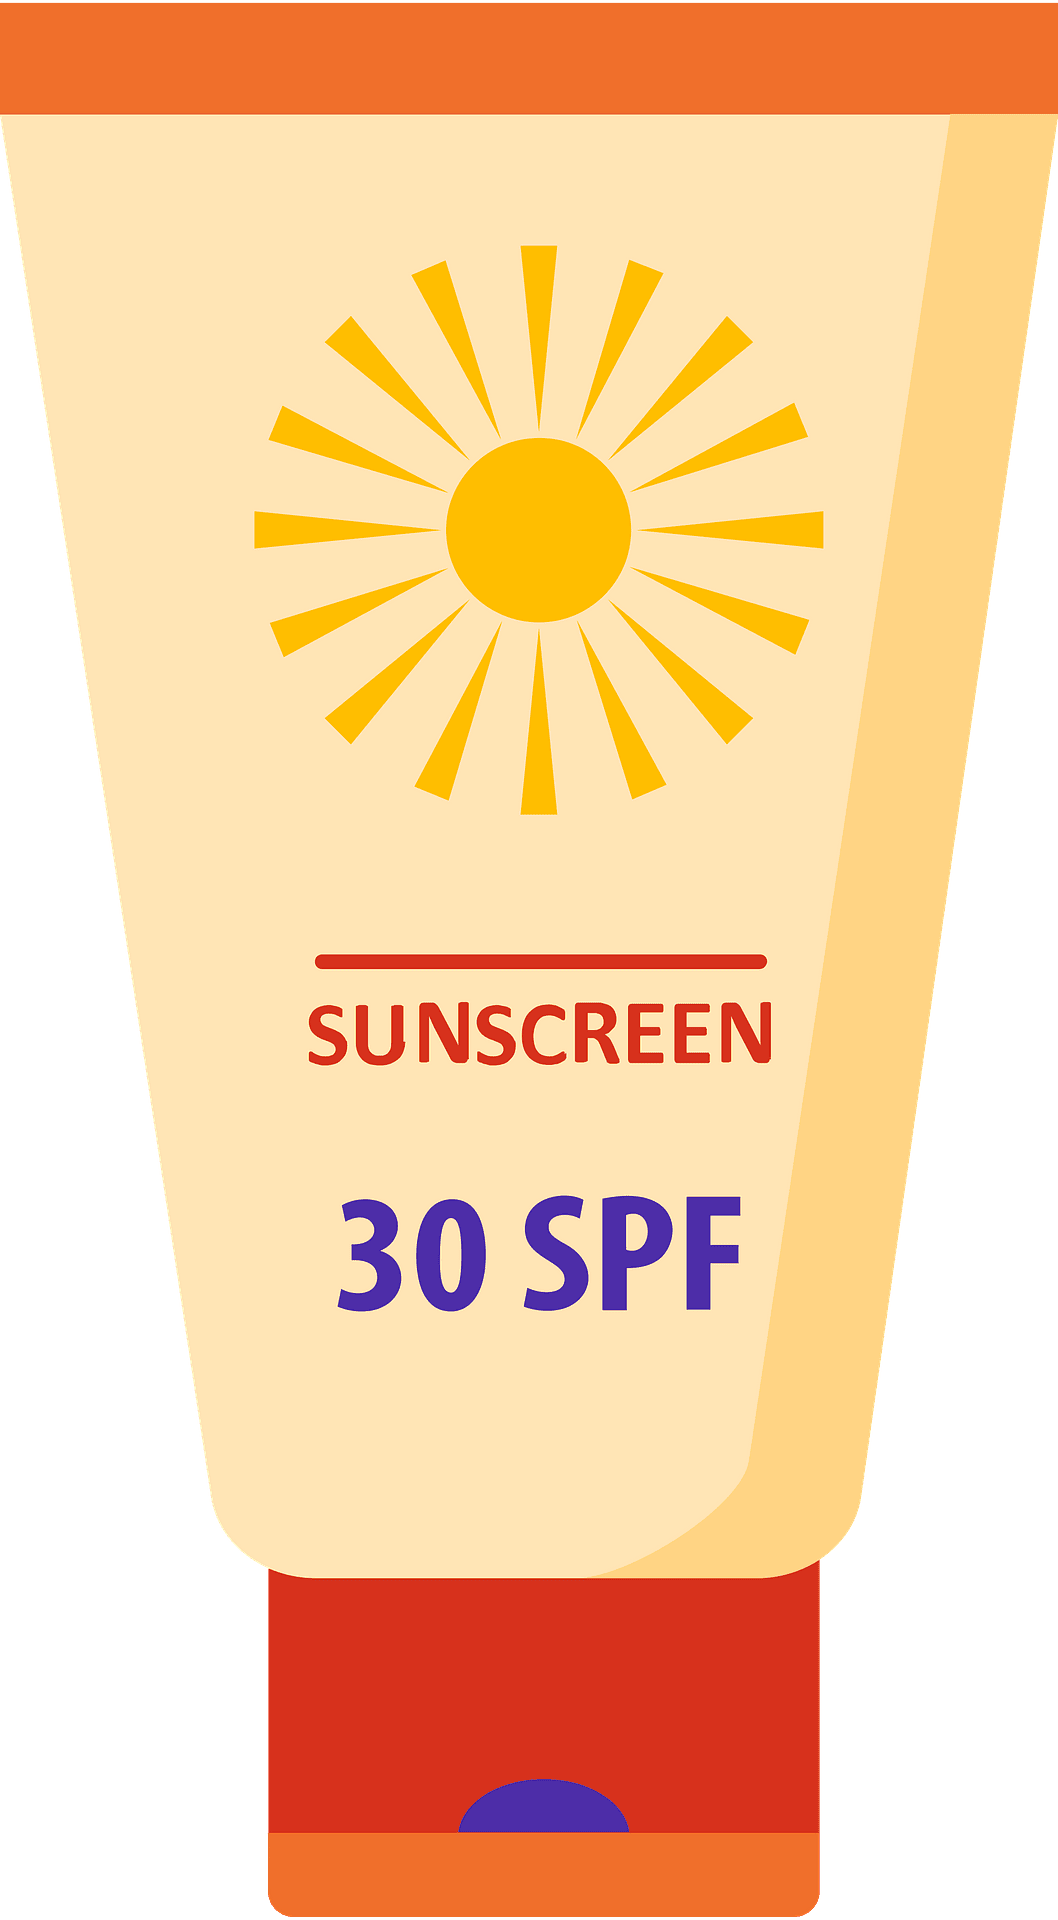 Sunscreen clipart clip art